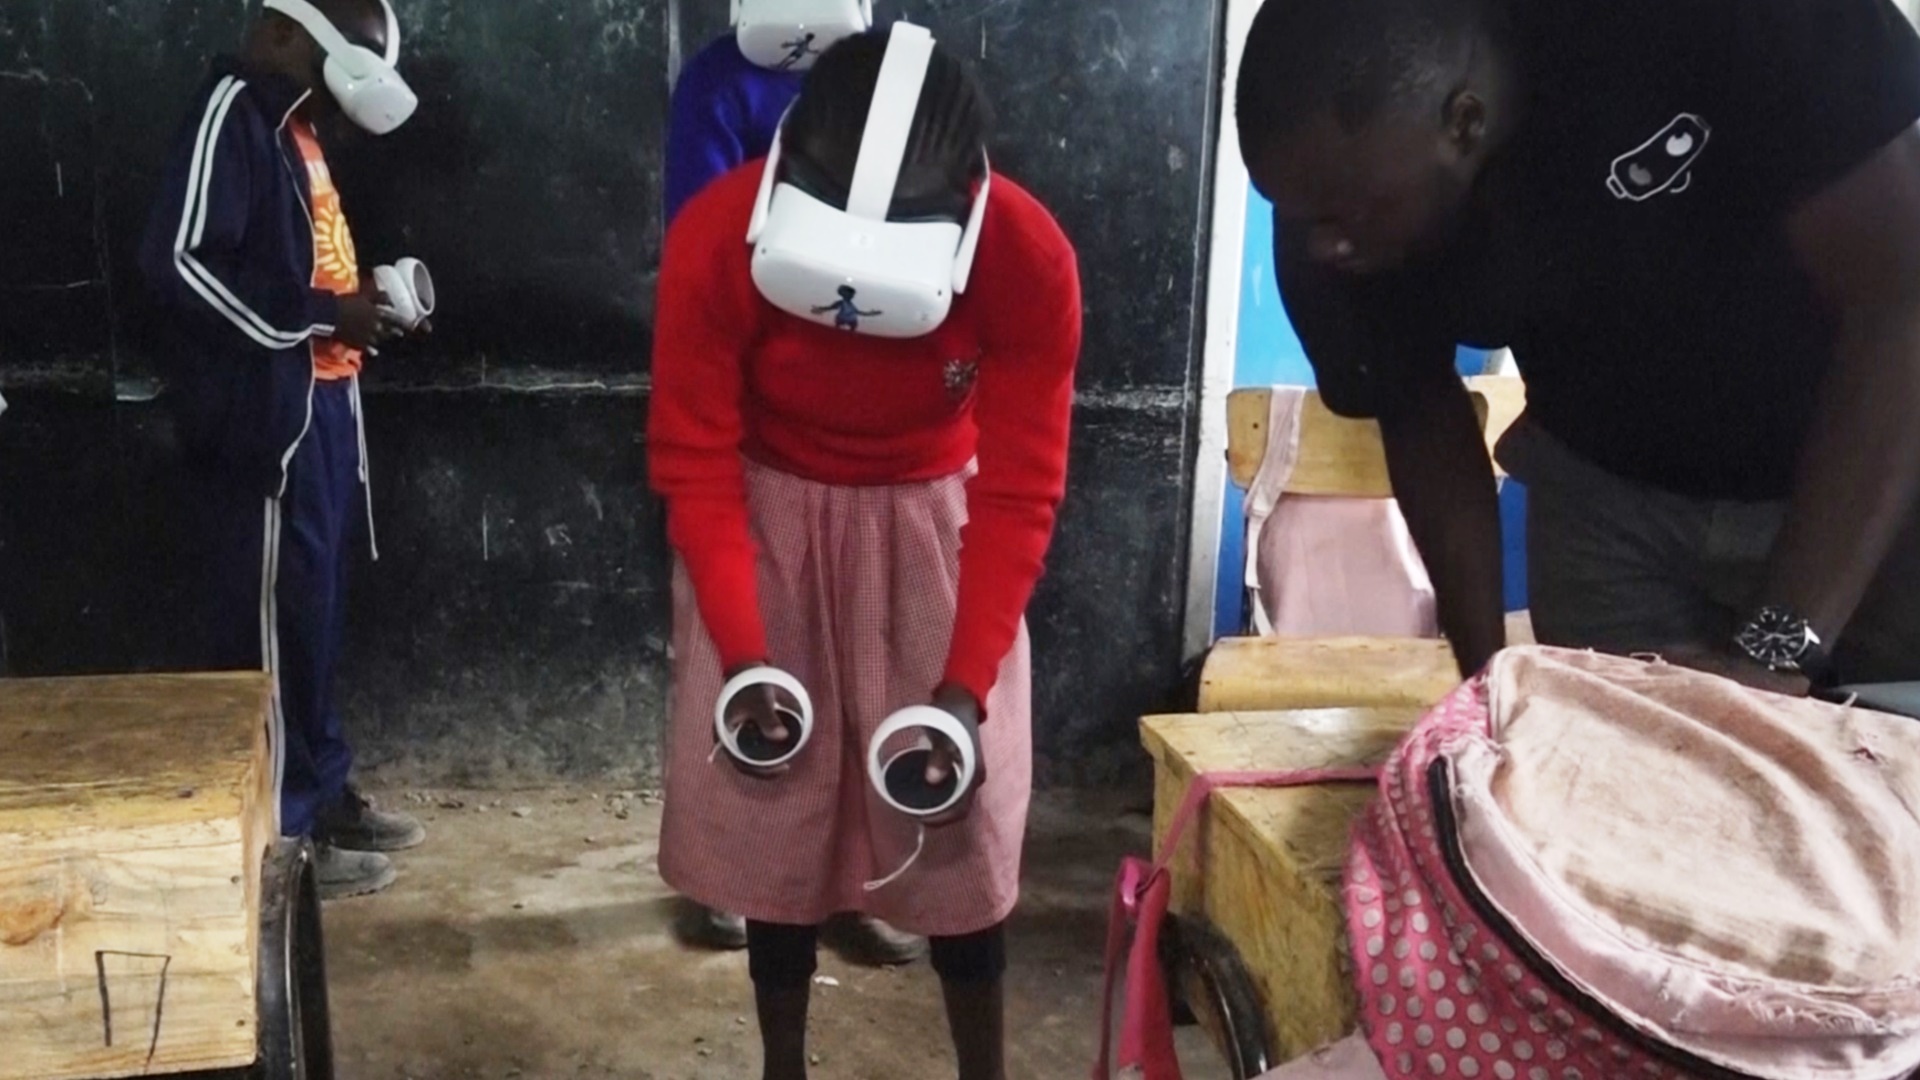 Кенийские школьники путешествуют в гарнитурах виртуальной реальности